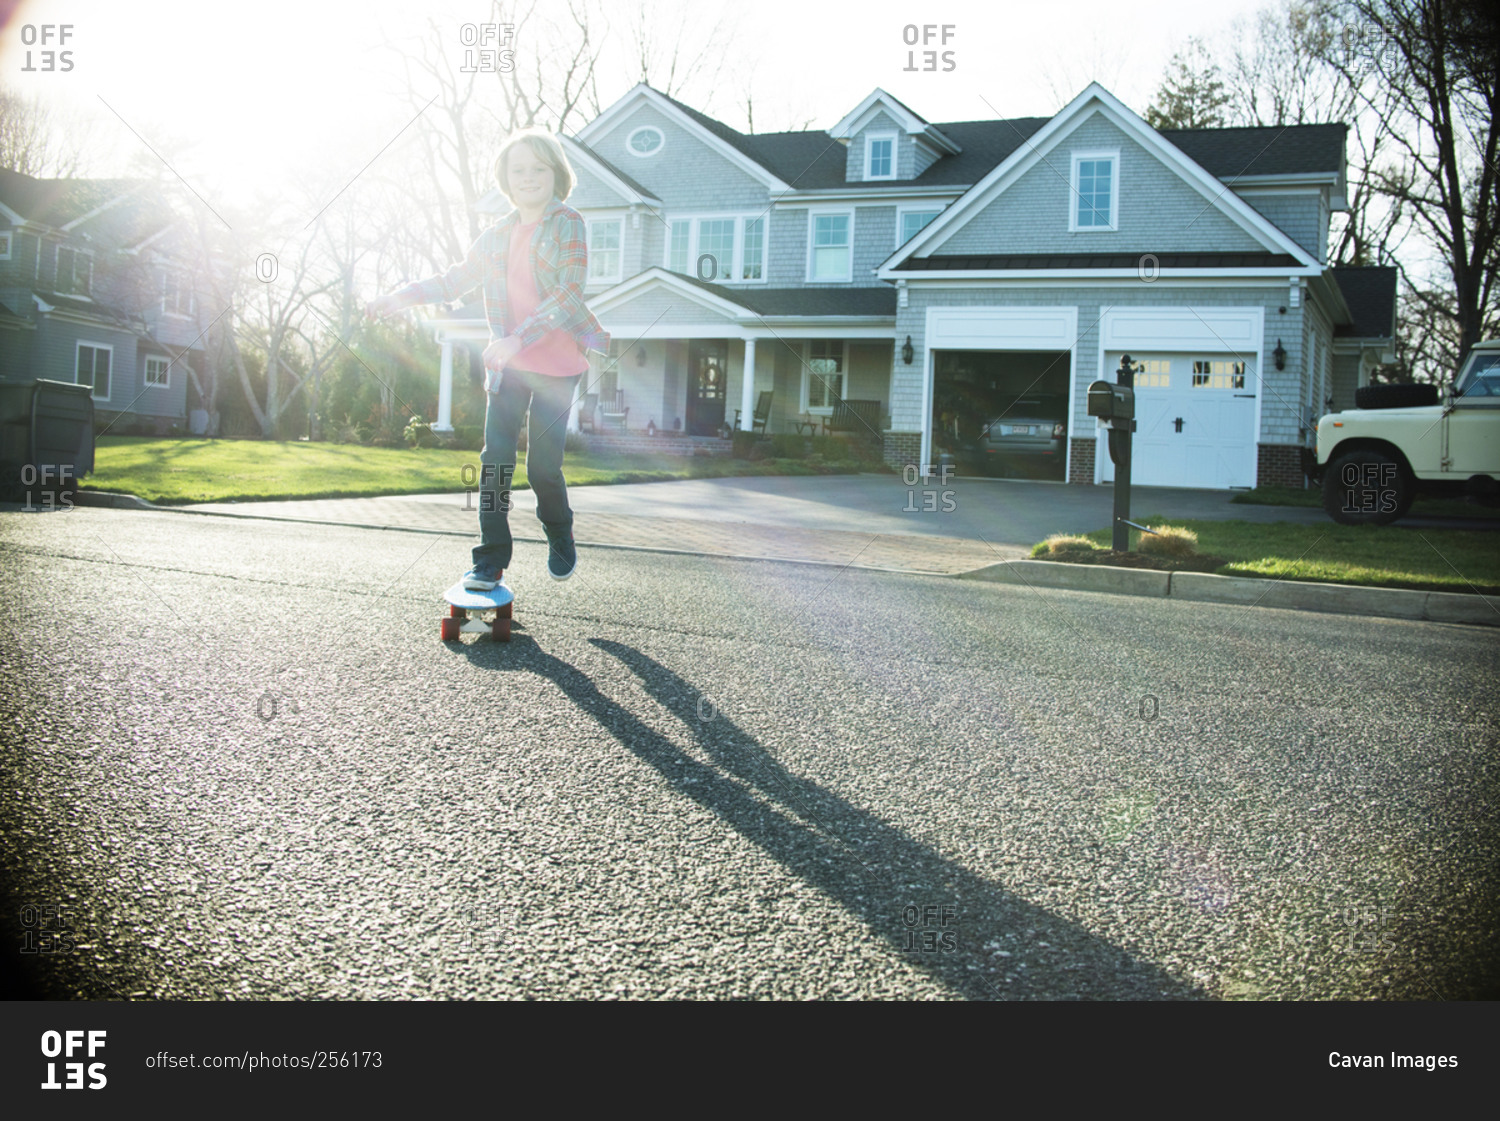 Boy riding skateboard in street in sunlight